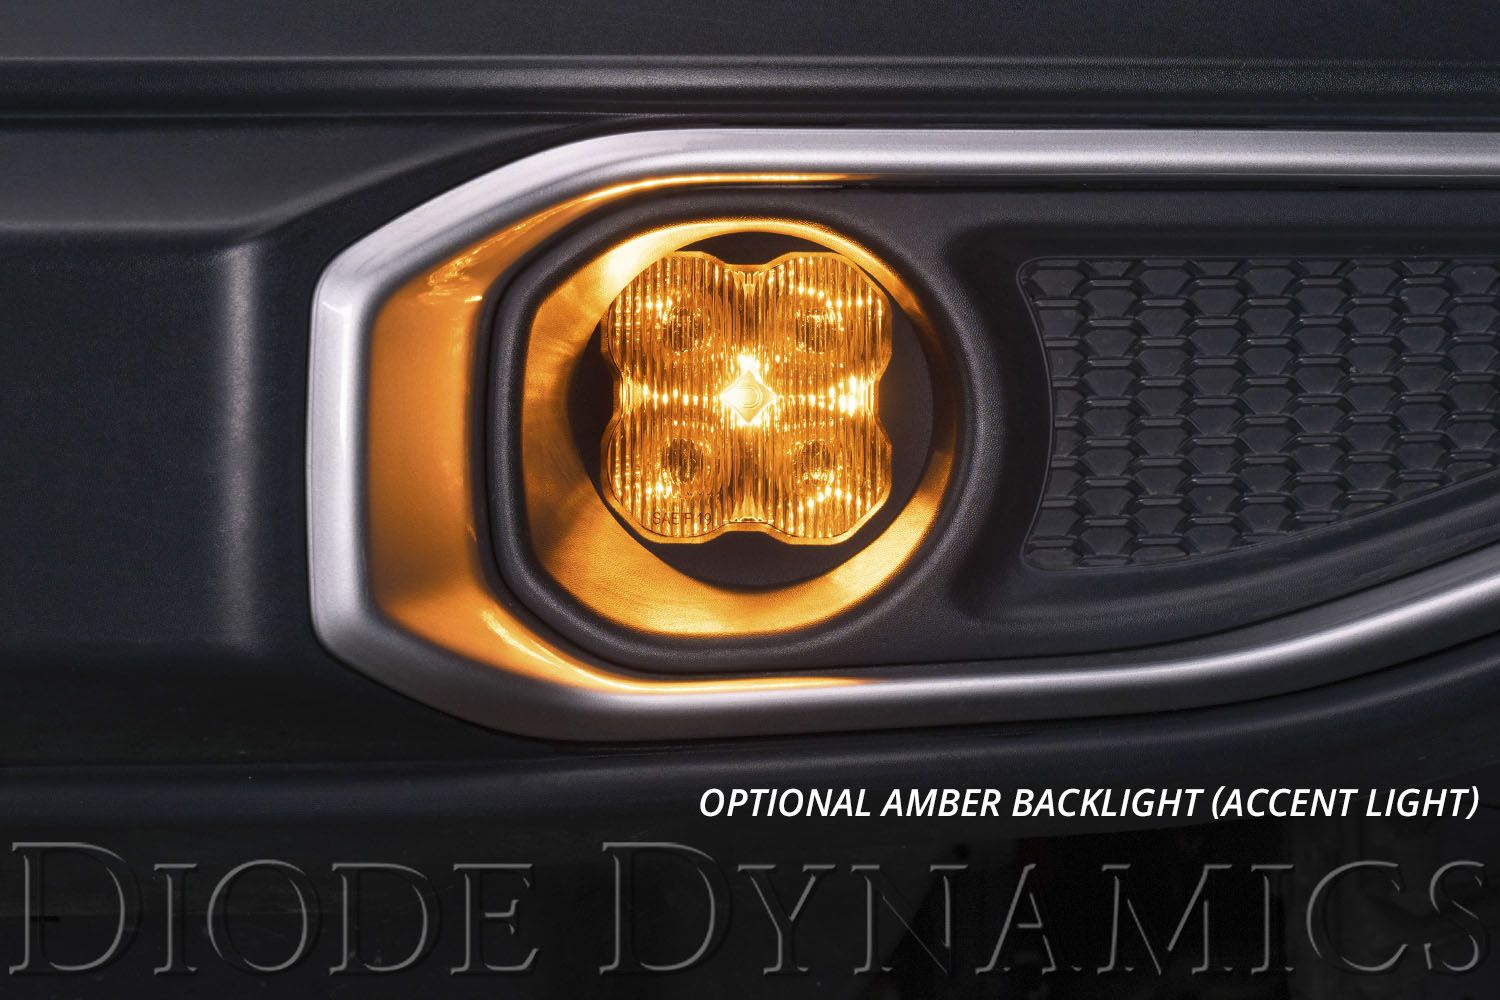 SS3 LED Fog Light Kit for 2009-2016 Toyota Corolla Diode Dynamics-